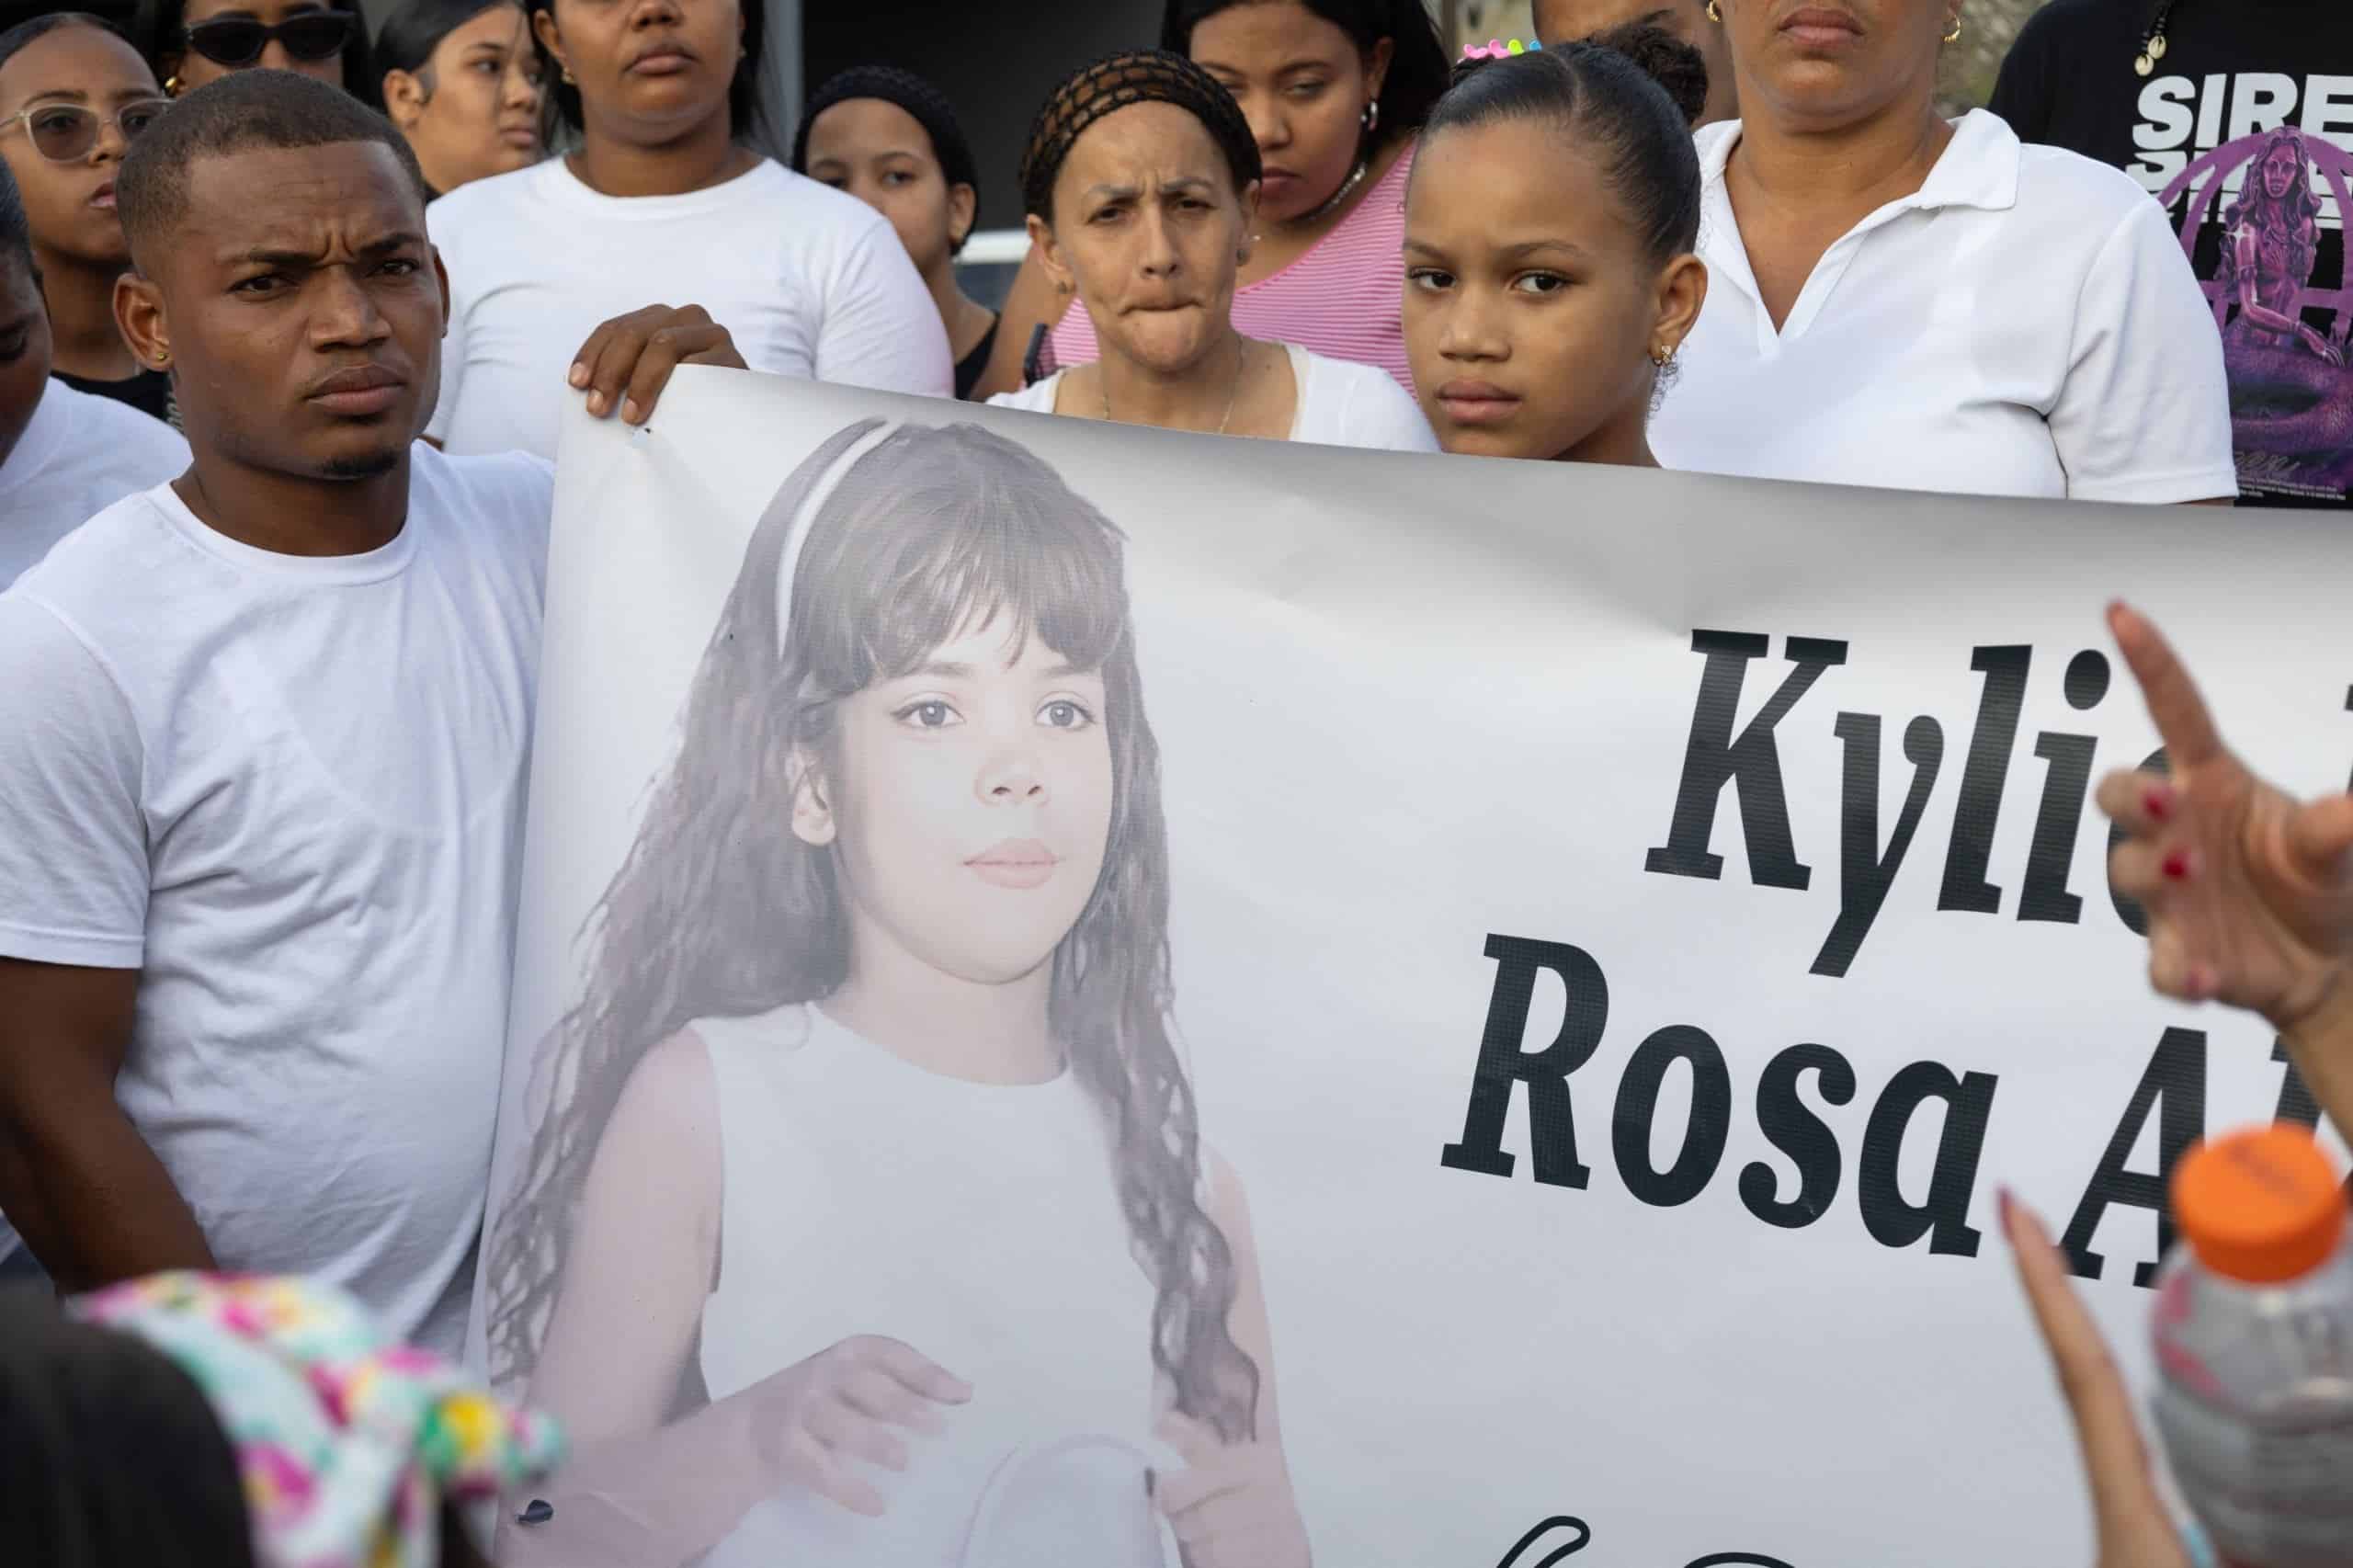 Imputado en muerte de niña Kylie Rosa será juzgado como menor; cumplió 18 años el día del asalto